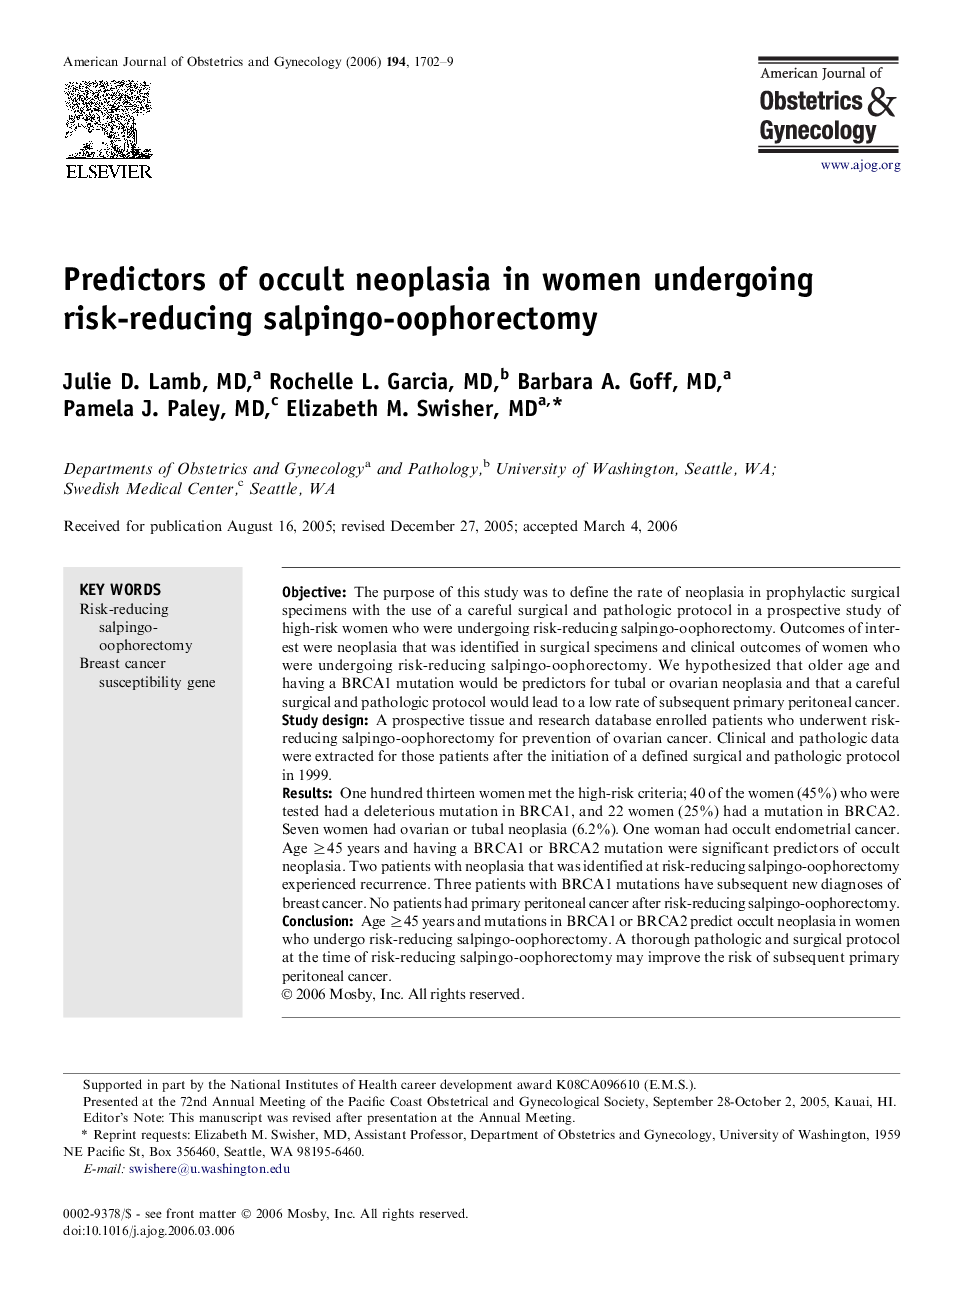 Predictors of occult neoplasia in women undergoing risk-reducing salpingo-oophorectomy 